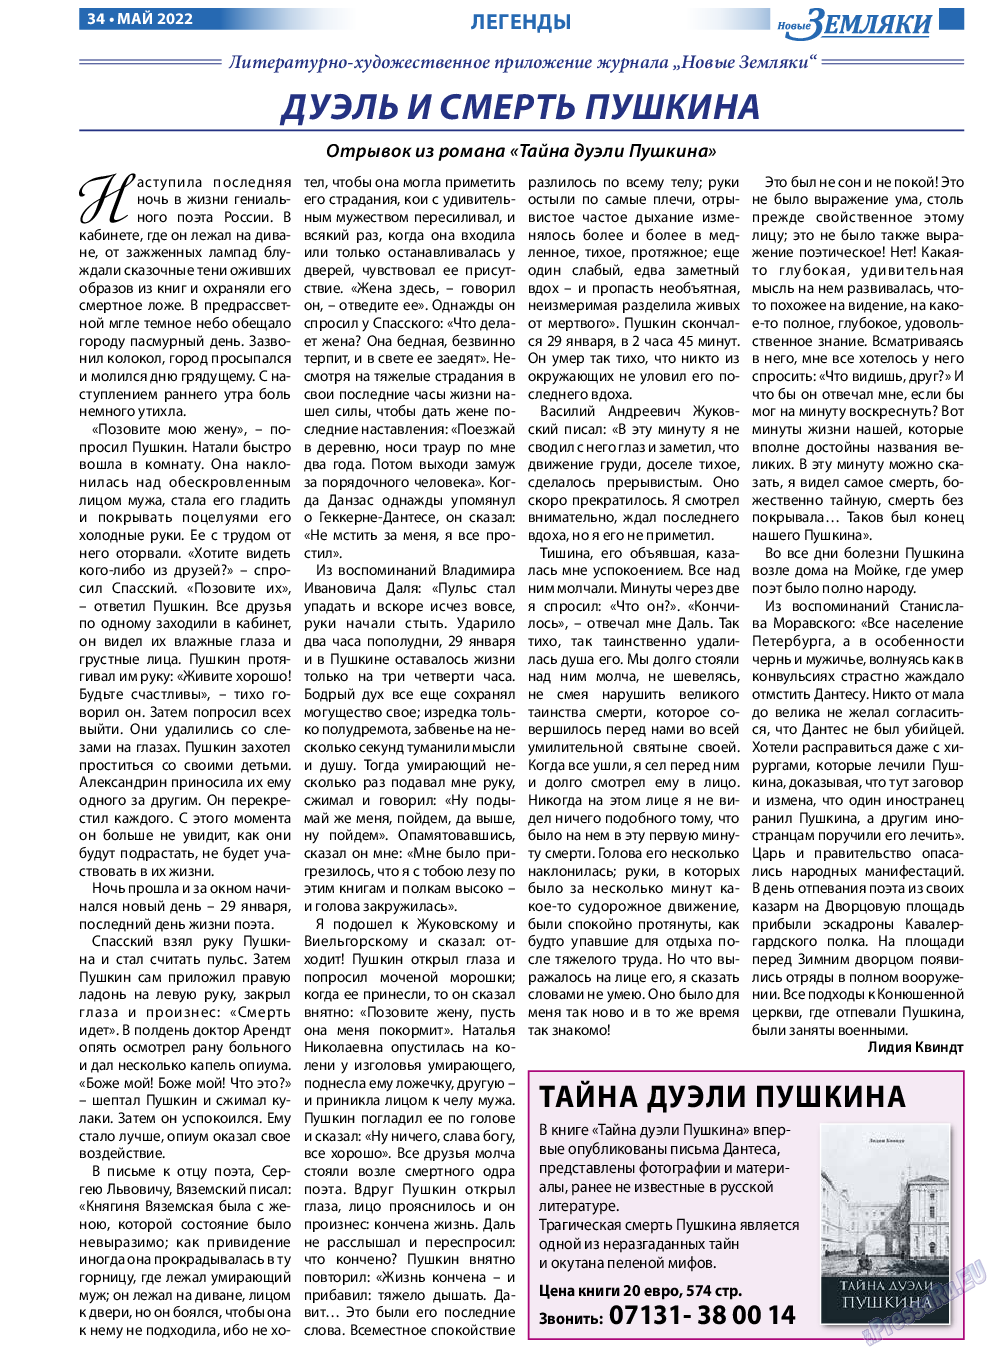 Новые Земляки, газета. 2022 №5 стр.34